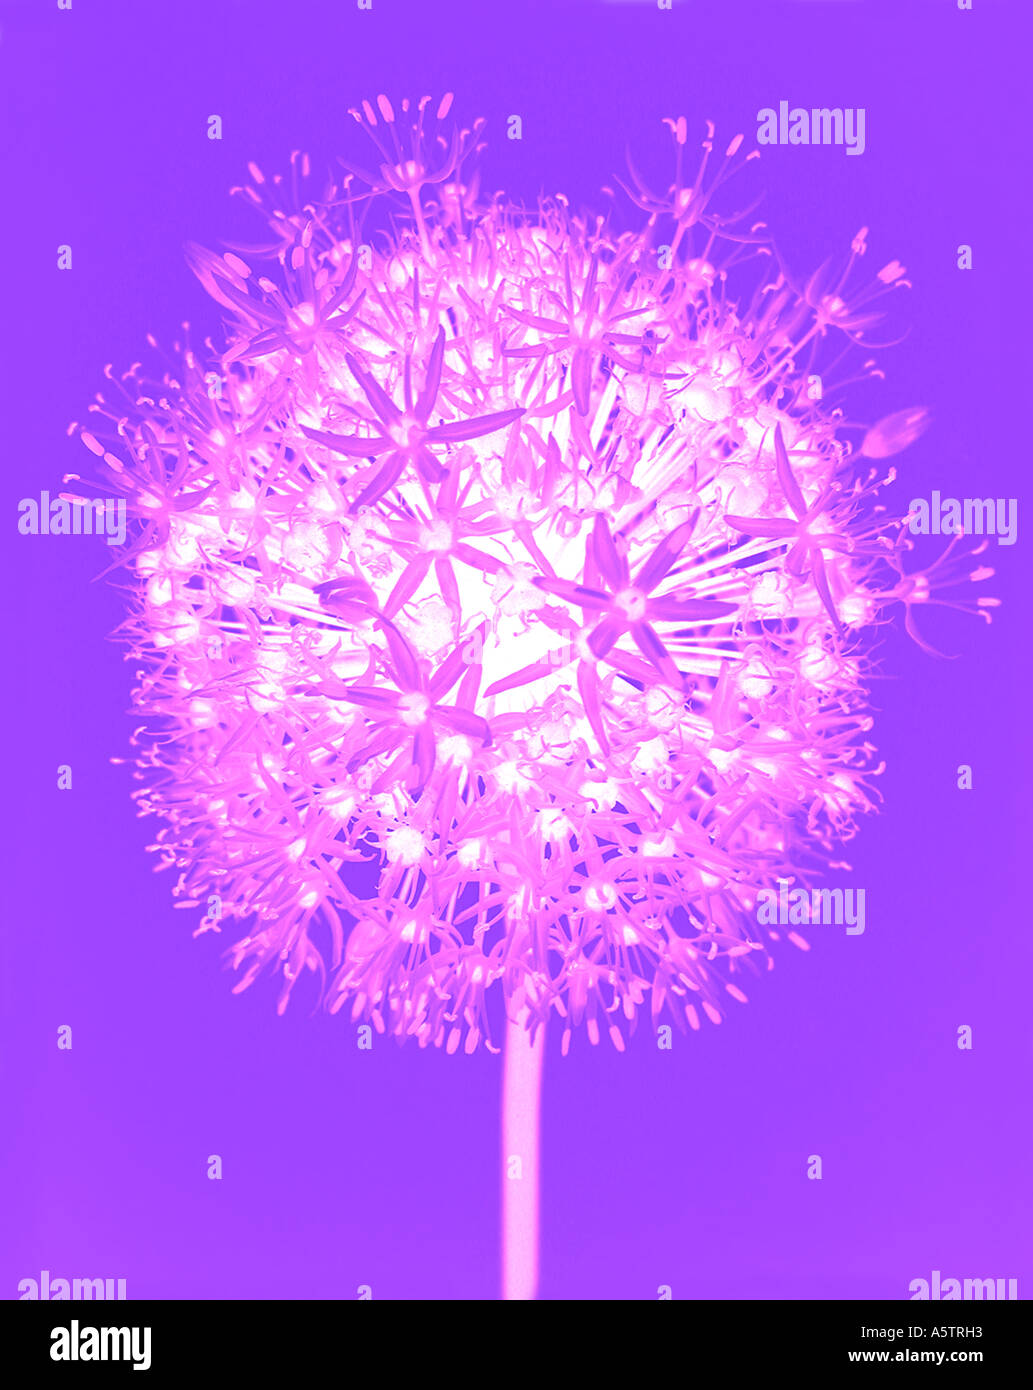 Computer manipuliert Bild Allium Blume eine zeitgenössische Transluncanct Wirkung Stockfoto